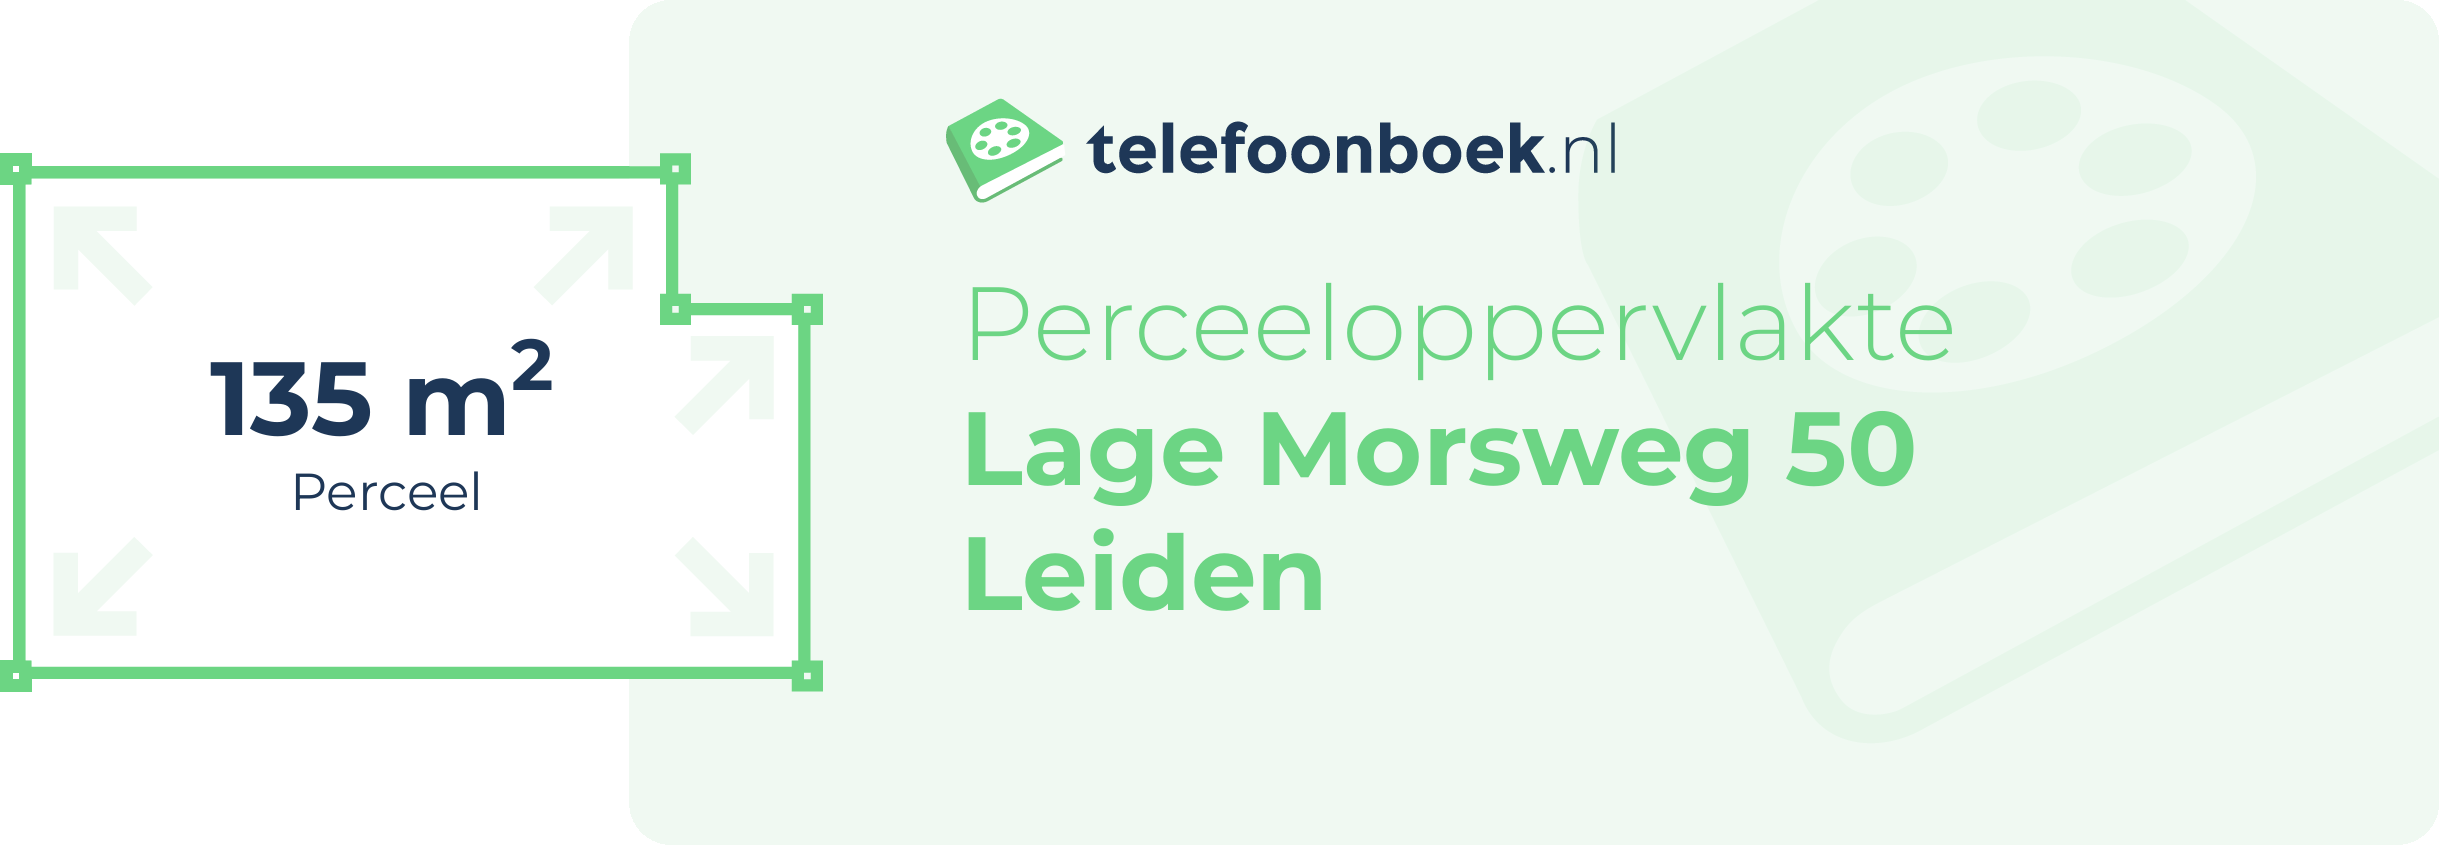 Perceeloppervlakte Lage Morsweg 50 Leiden